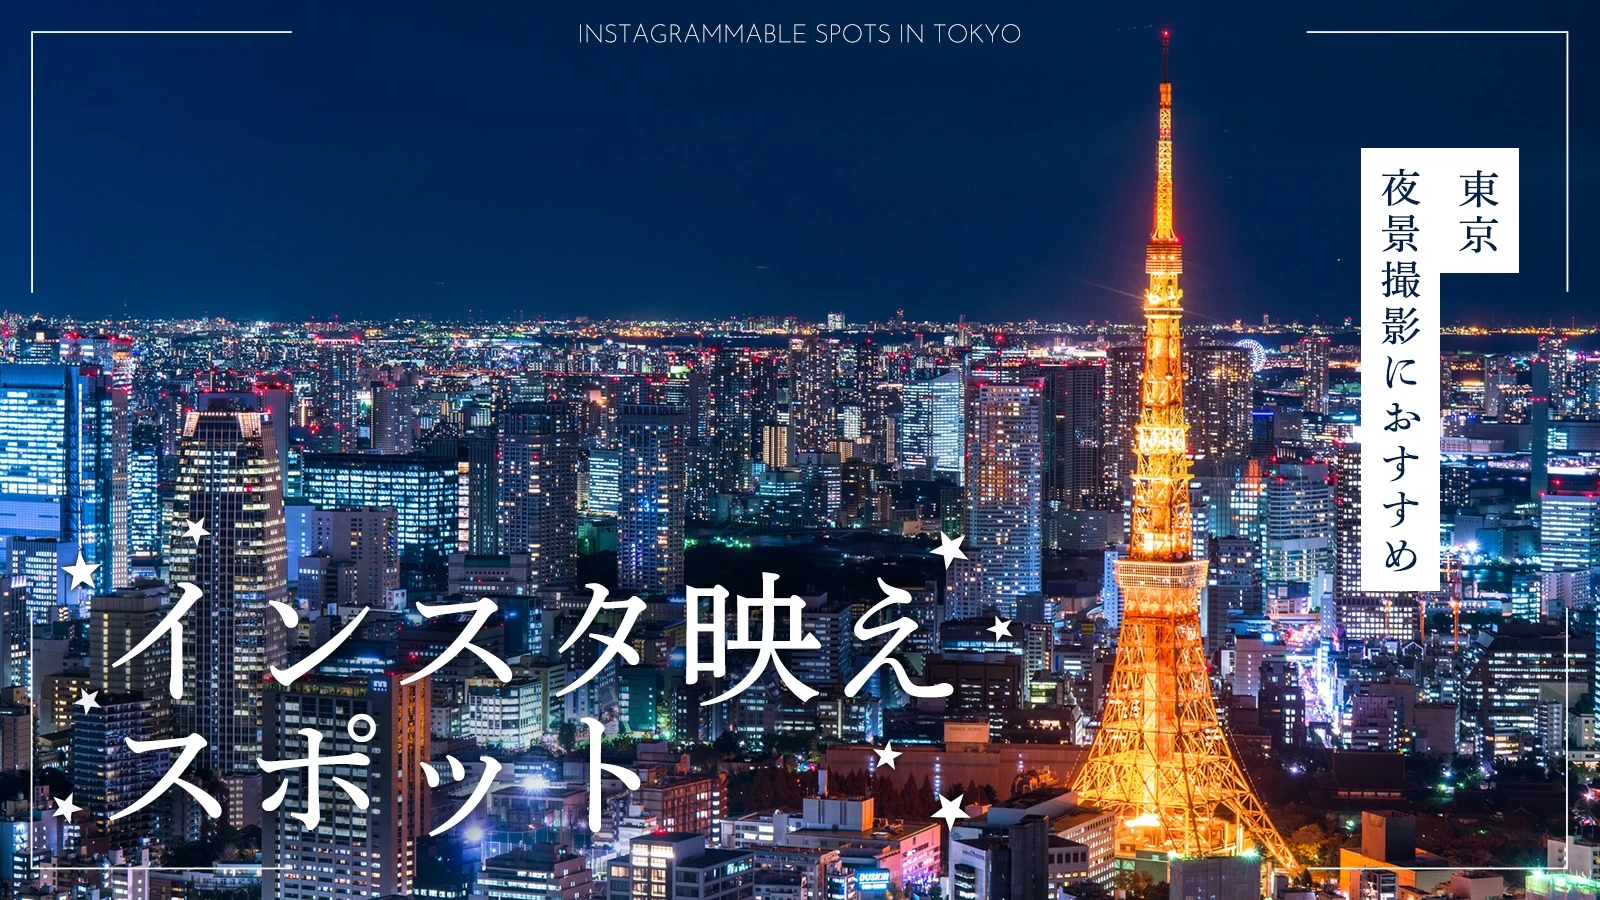 【東京・おでかけ】夜景撮影におすすめのインスタ映えスポット25選